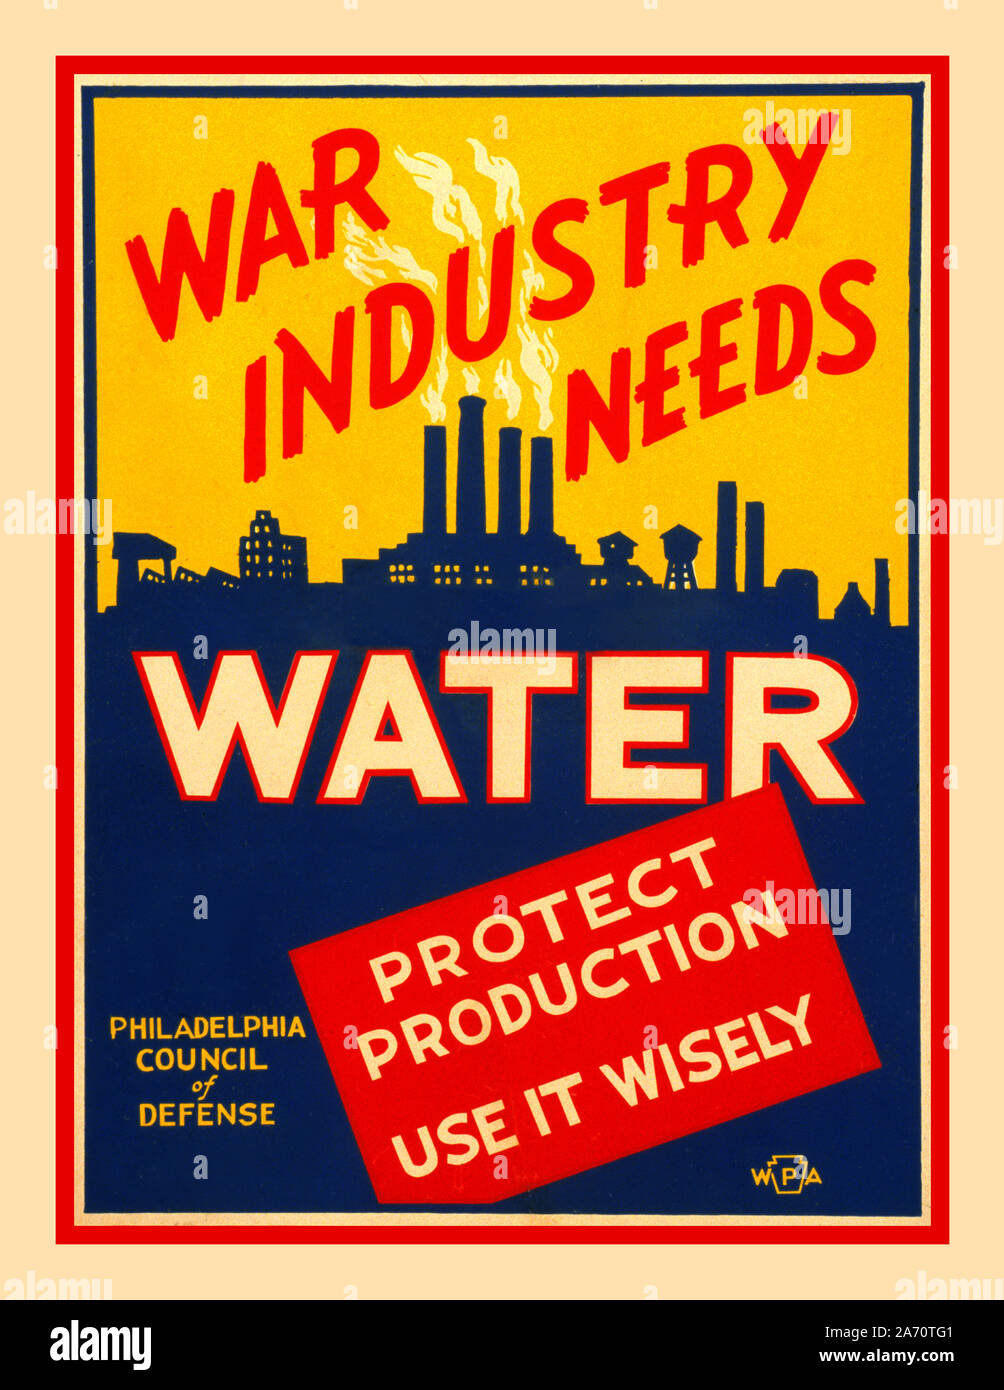 Vintage WW2 amerikanische Propaganda Informationen Poster USA 'Krieg der Industrie braucht Wasser 'Poster Förderung der Erhaltung von Wasser für den Krieg. Jan 21 1943. Künstler: Glenn Pearce.; durch Philadelphia Rat der Verteidigung gefördert. Den Jahren 1942/43 entstand Stockfoto